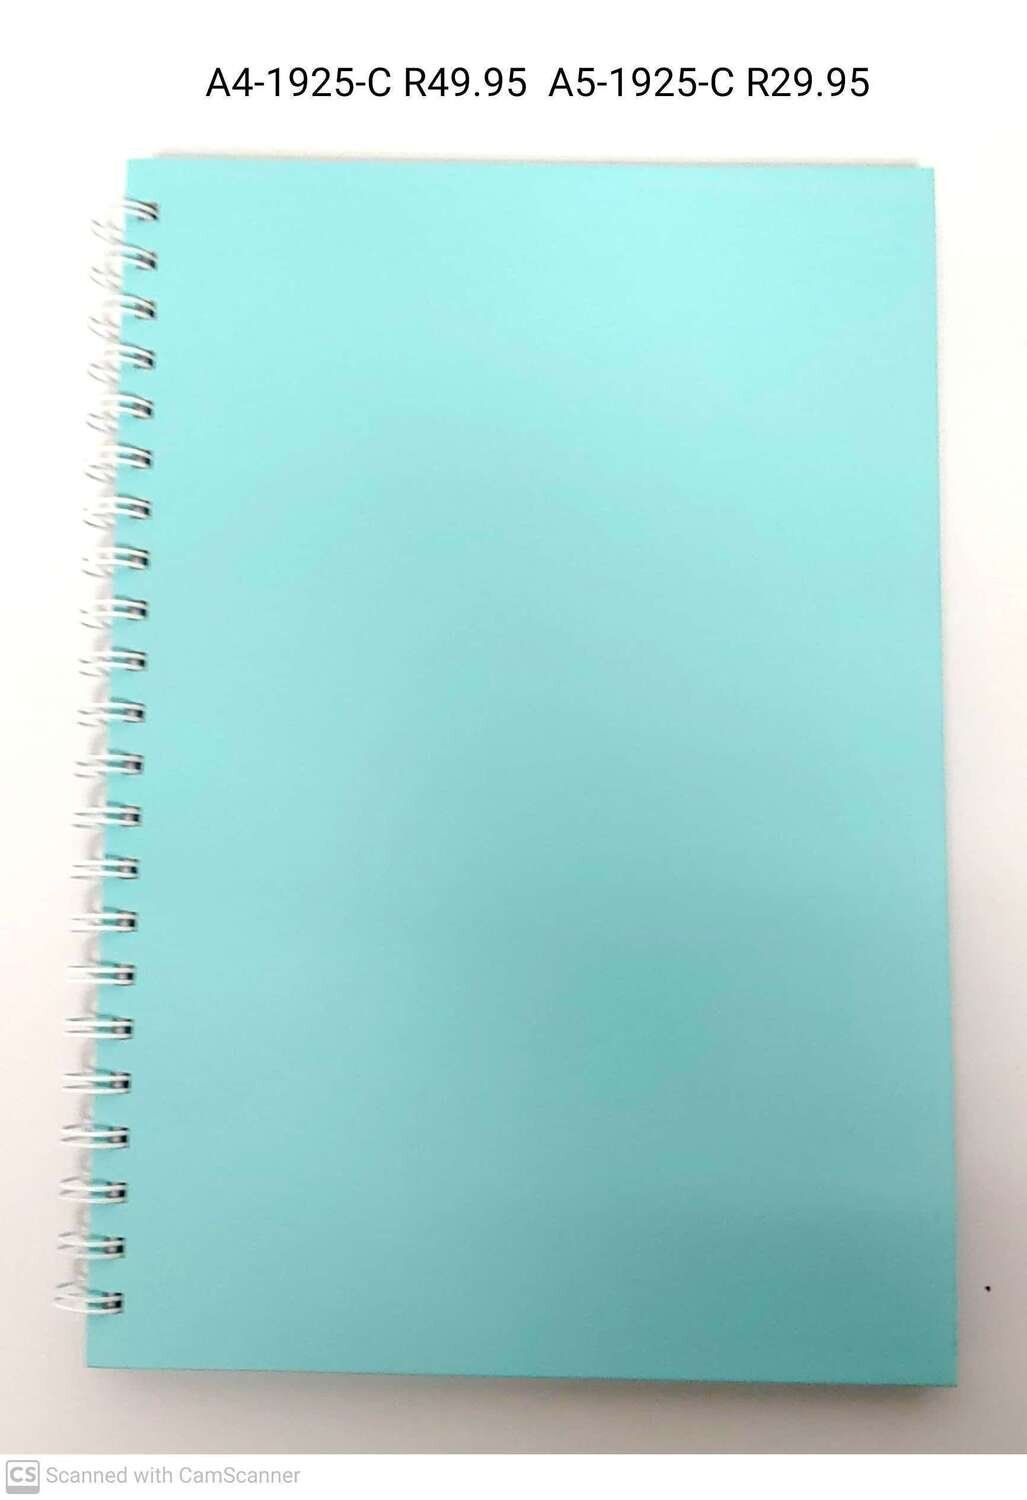 A5 Note Book Plain Blue